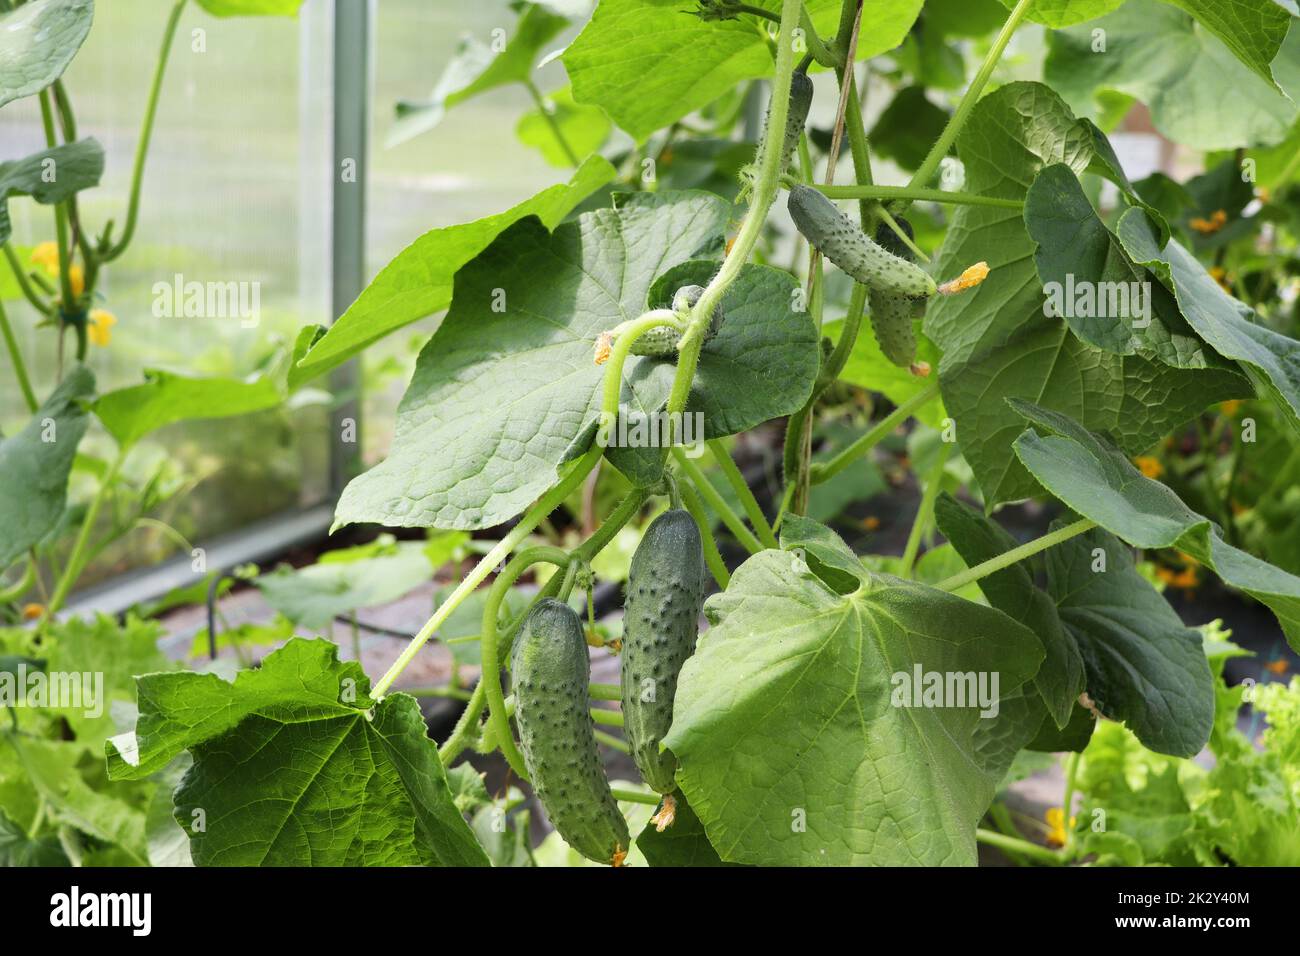 Cetrioli che crescono in serra, ortaggi sani senza pesticidi, prodotto biologico. Foto Stock